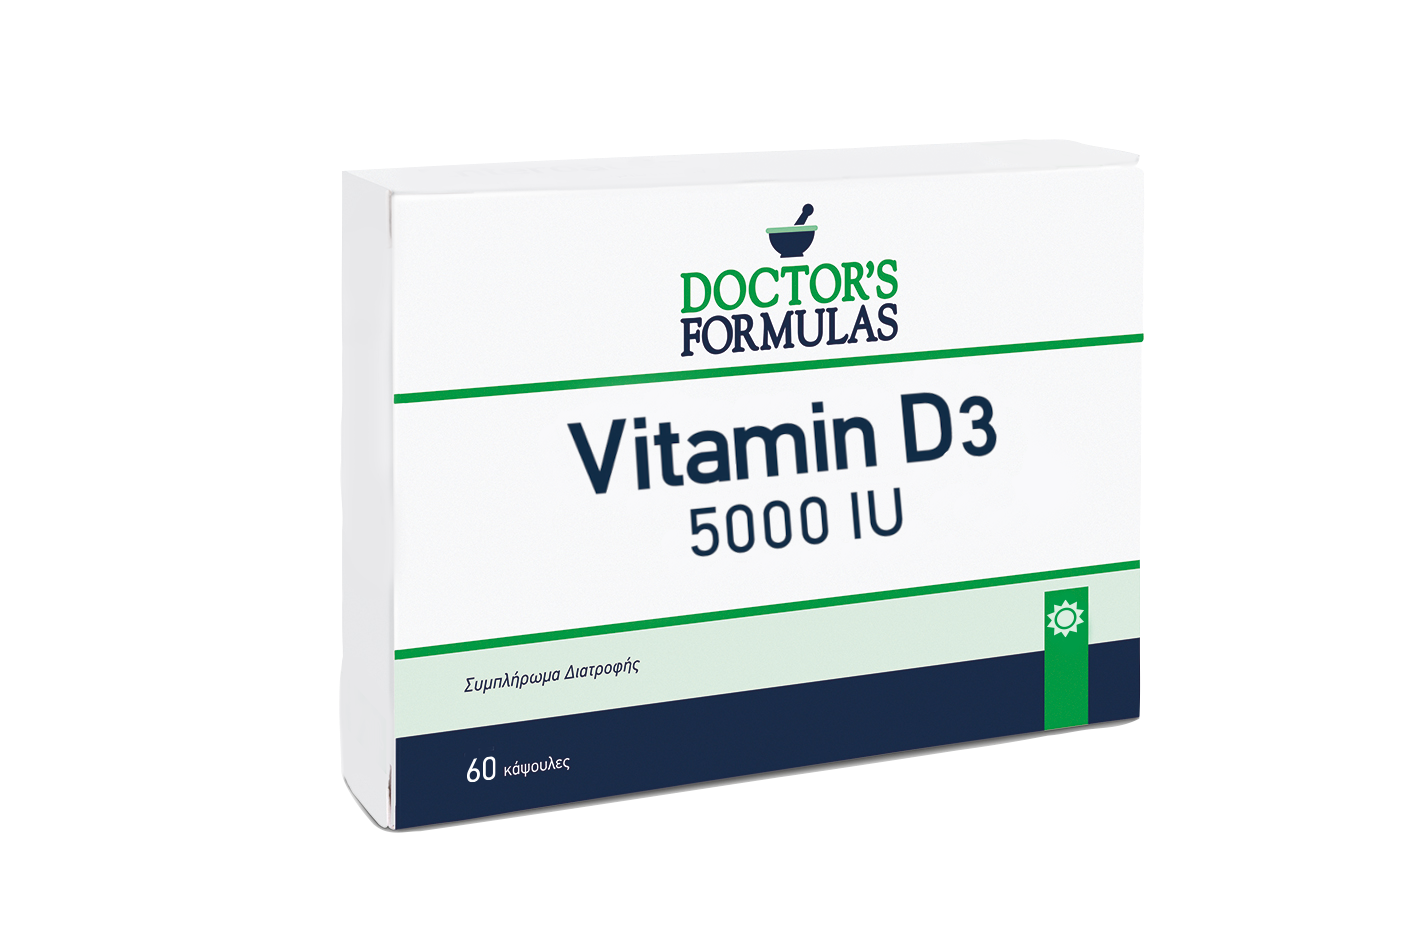 VITAMIN D3 5000 IU | Potent Vitamin D3 Formula